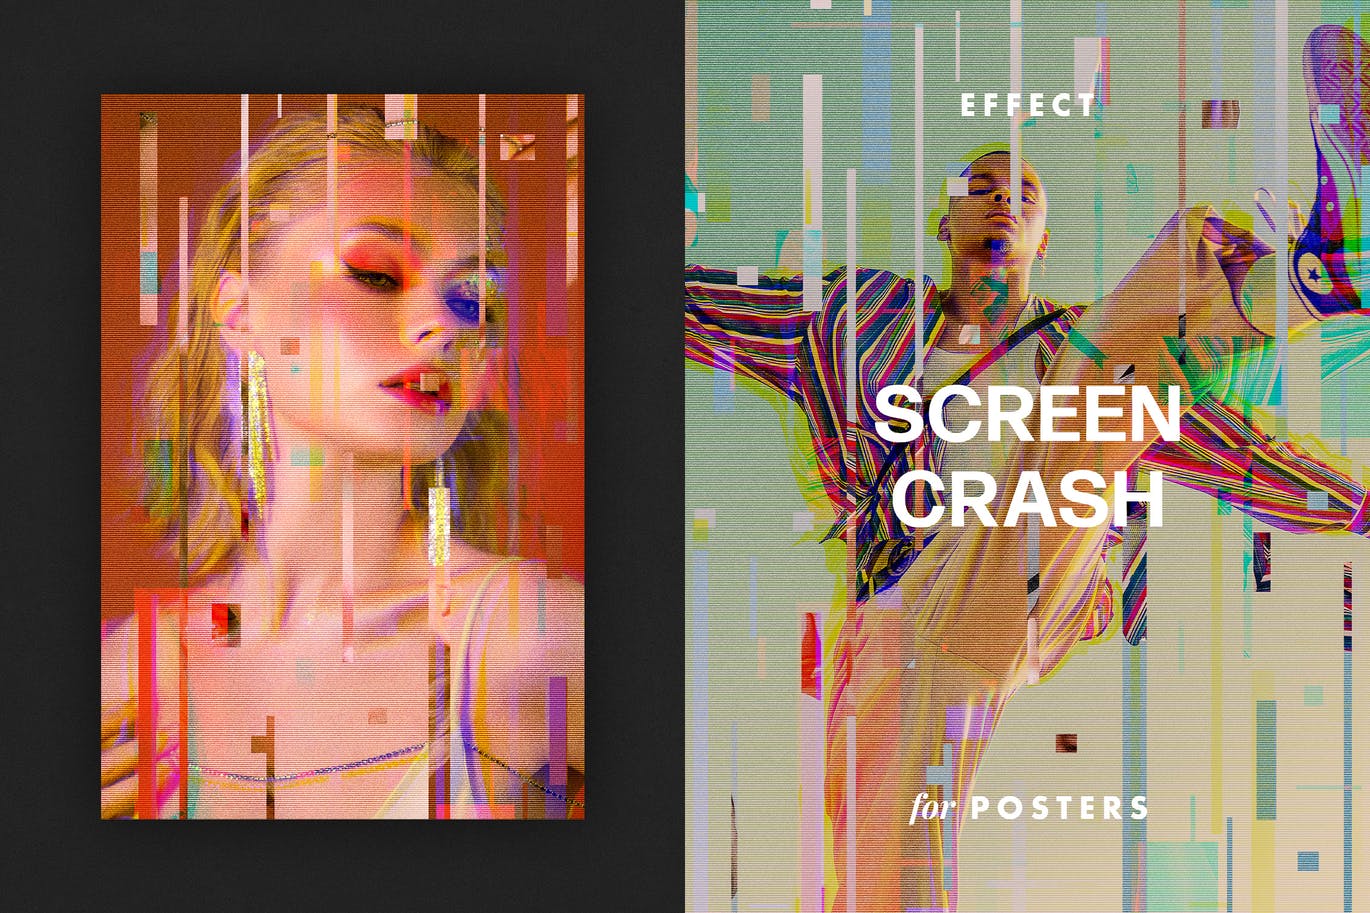 屏幕故障效果海报模板 Screen Crash Effect for Posters 插件预设 第1张